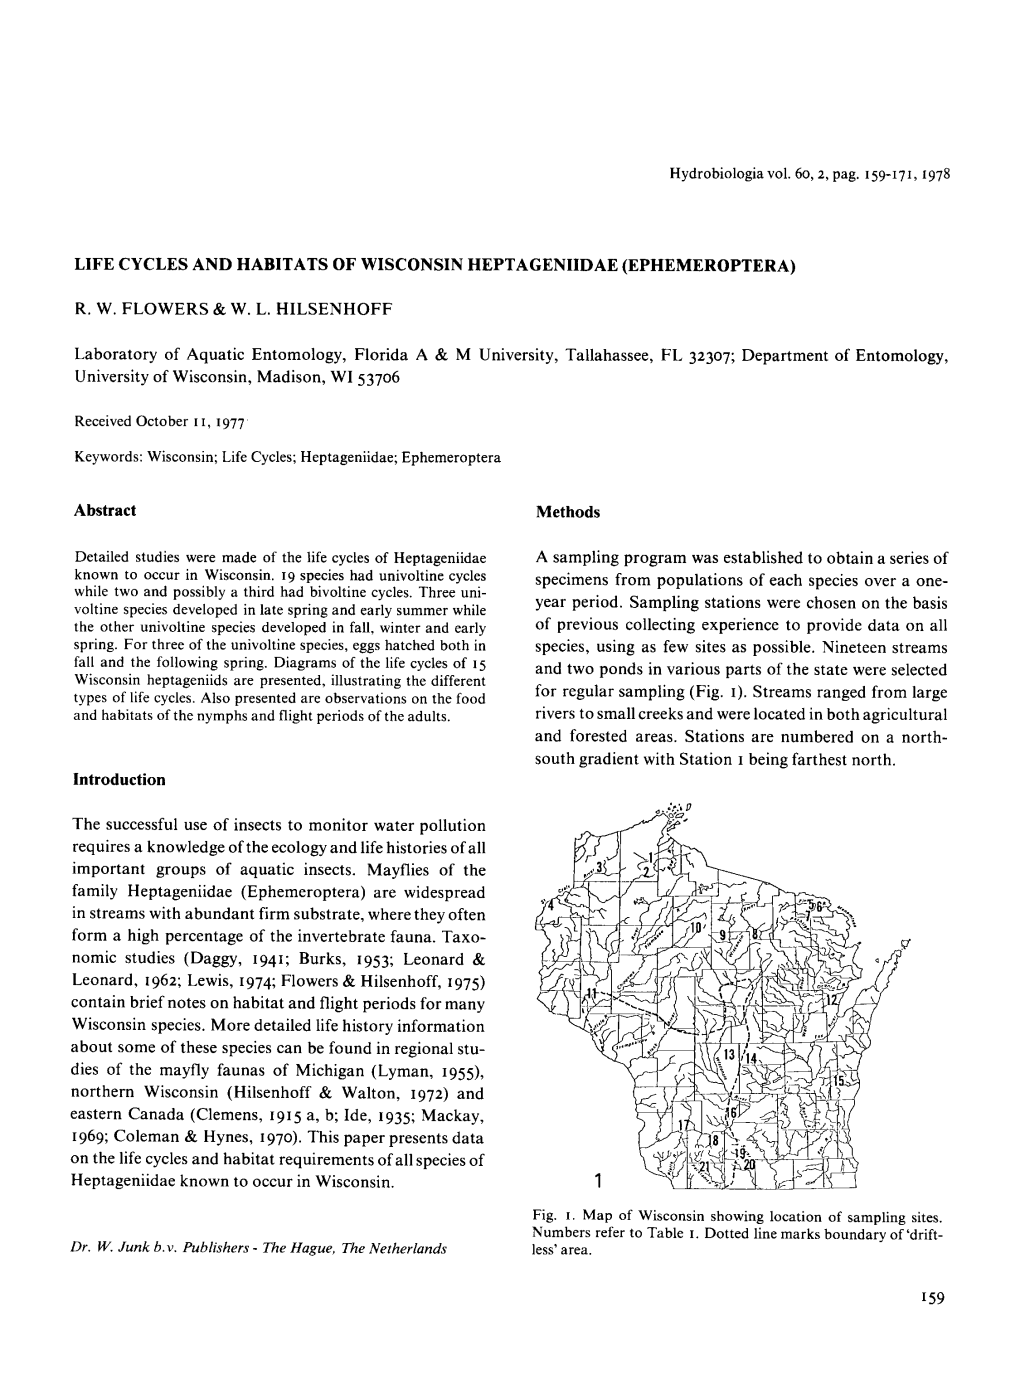 Life Cycles and Habitats of Wisconsin Heptageniidae (Ephemeroptera)